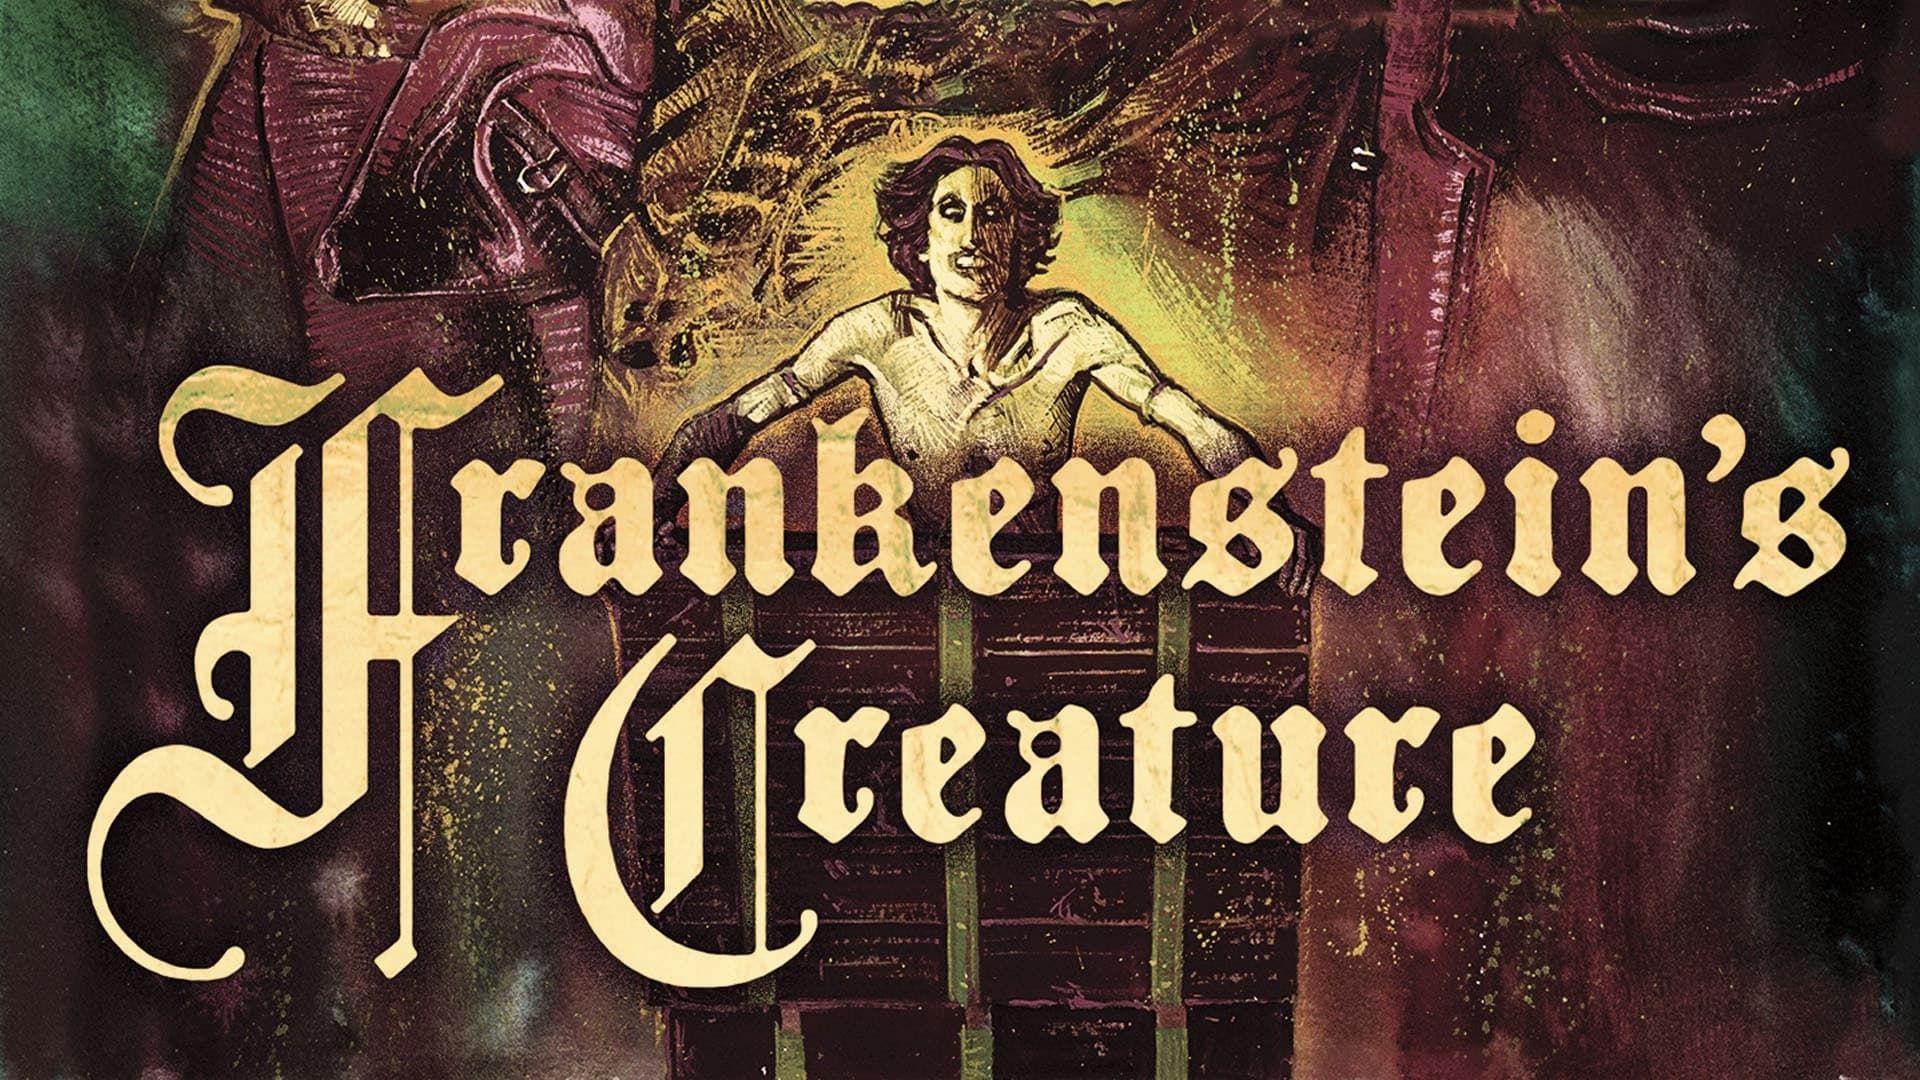 Cubierta de Frankenstein\'s Creature